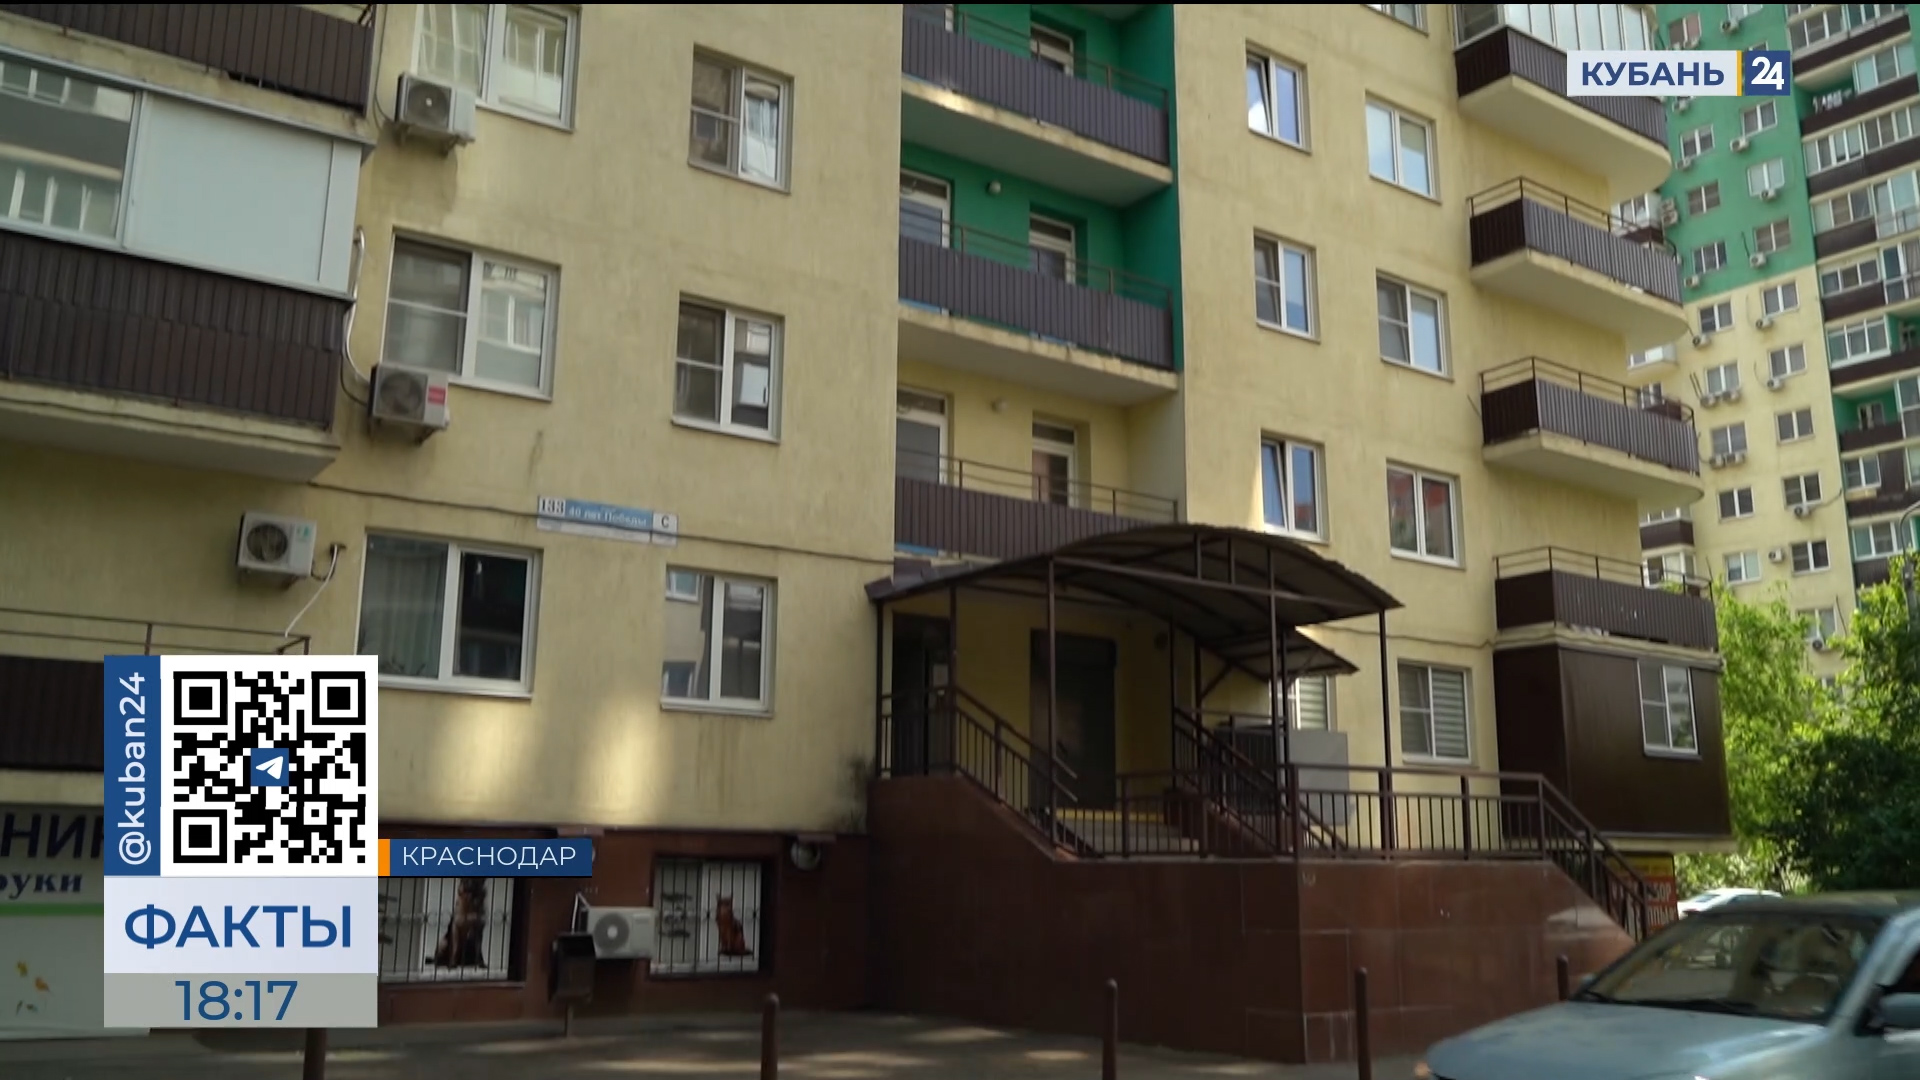 Следователи выясняют причины падения рабочего из многоэтажки в Краснодаре